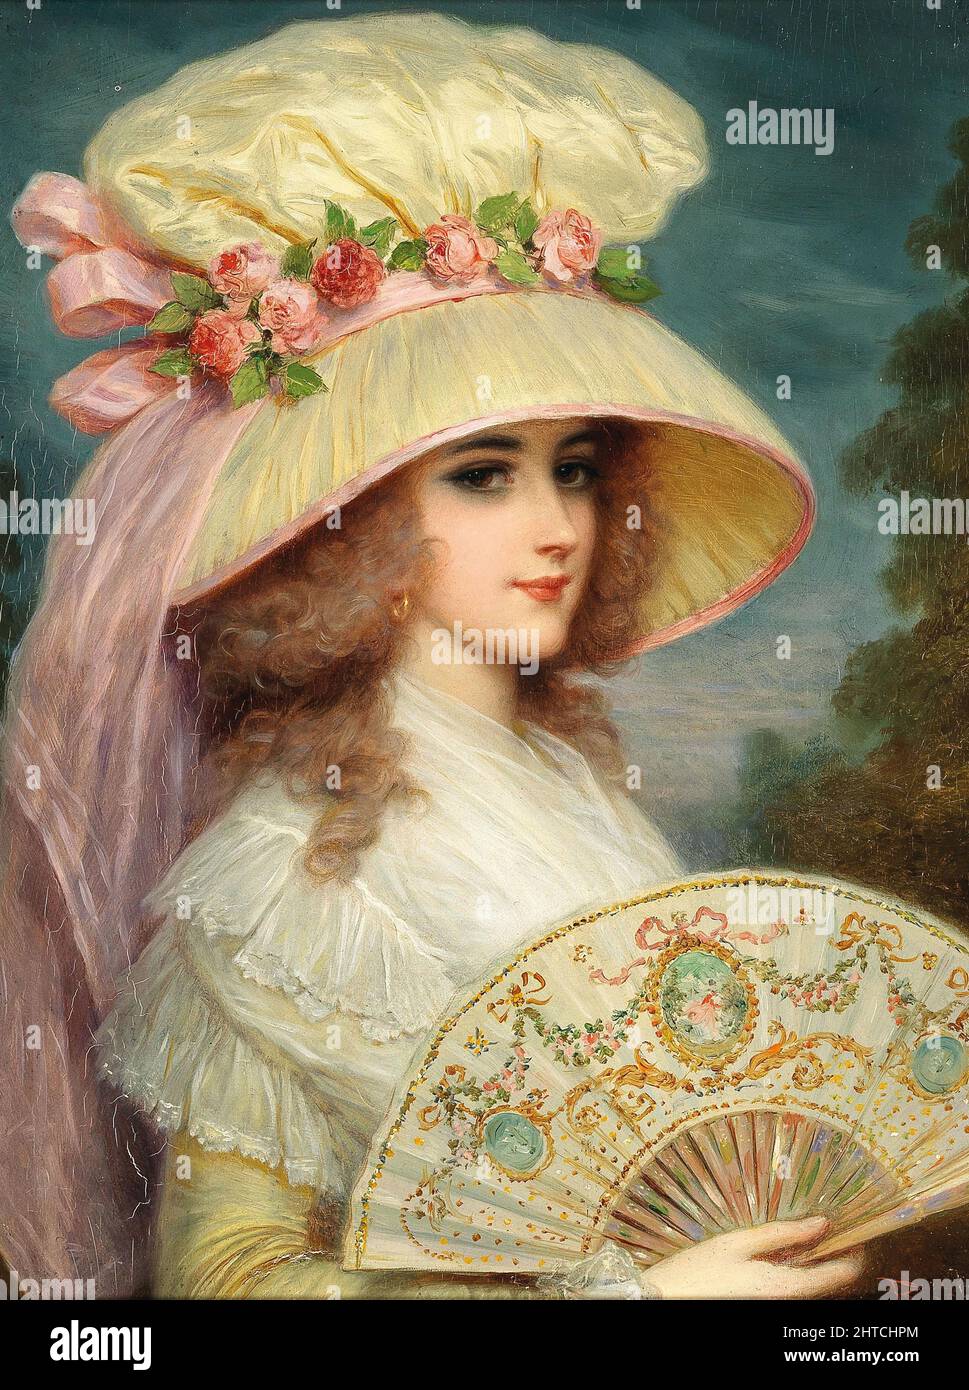 Dama con sombrero florecido y ventilador. Colección privada. Foto de stock